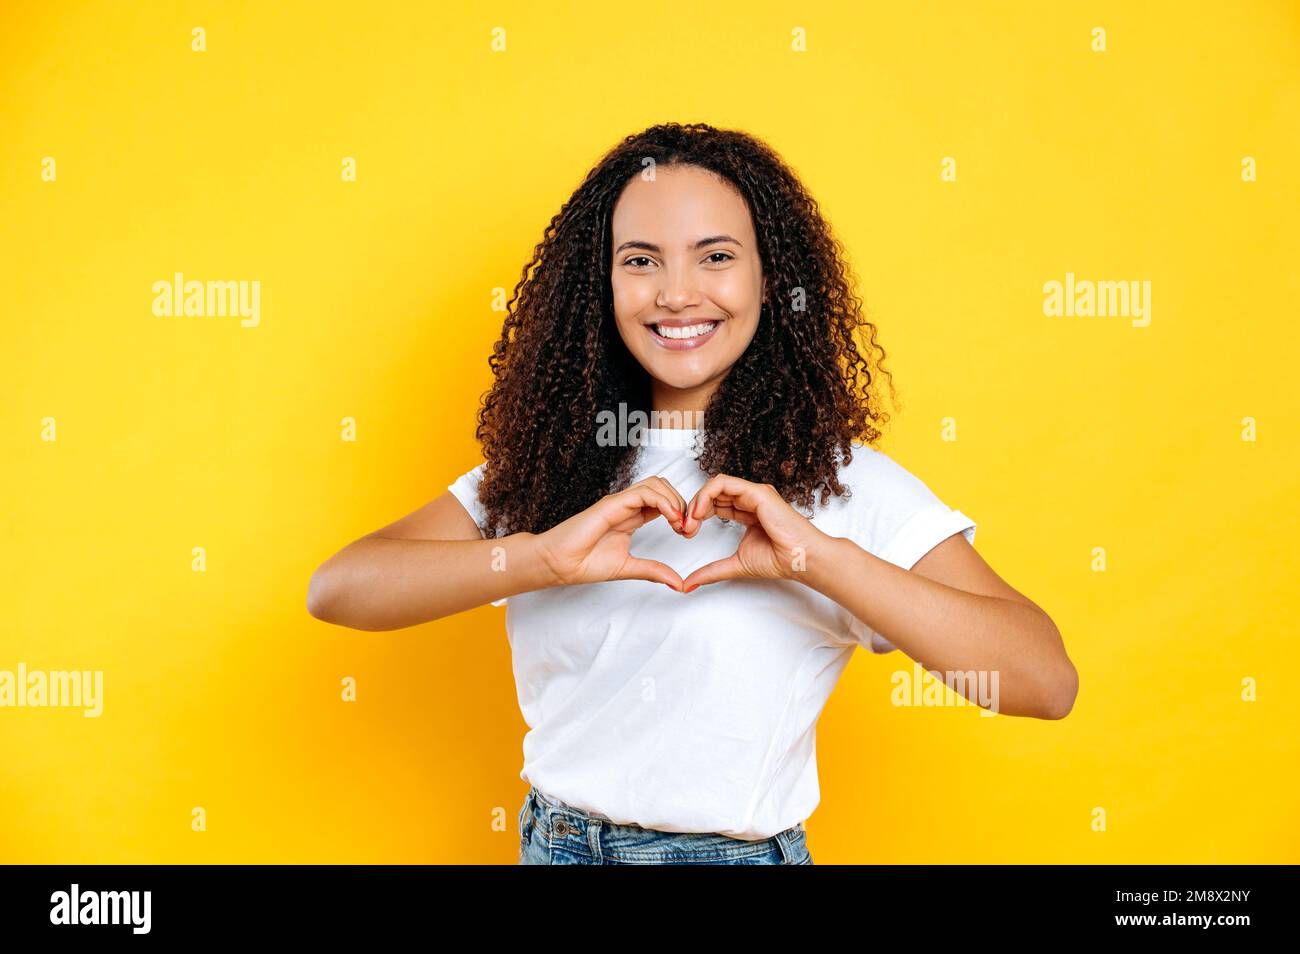 Hübscher, offener, angenehmer Latino oder junge brasilianische Frau, in einem einfachen T-Shirt, macht Herzgesten mit Händen, zeigt Liebeszeichen, steht auf isoliertem gelbem Hintergrund, schaut in die Kamera, lächelt freundlich Stockfoto